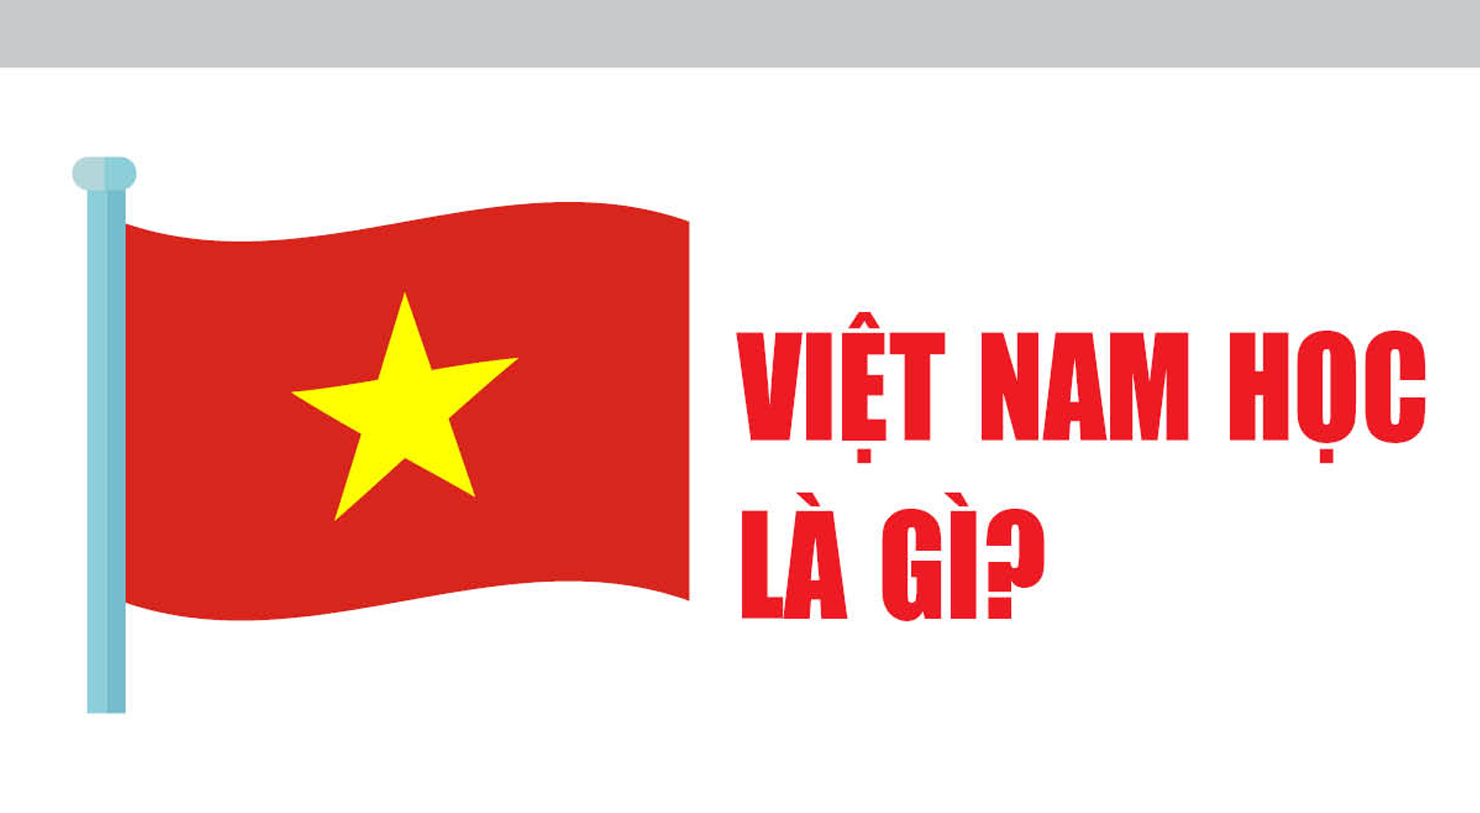 Việt Nam học là gì?